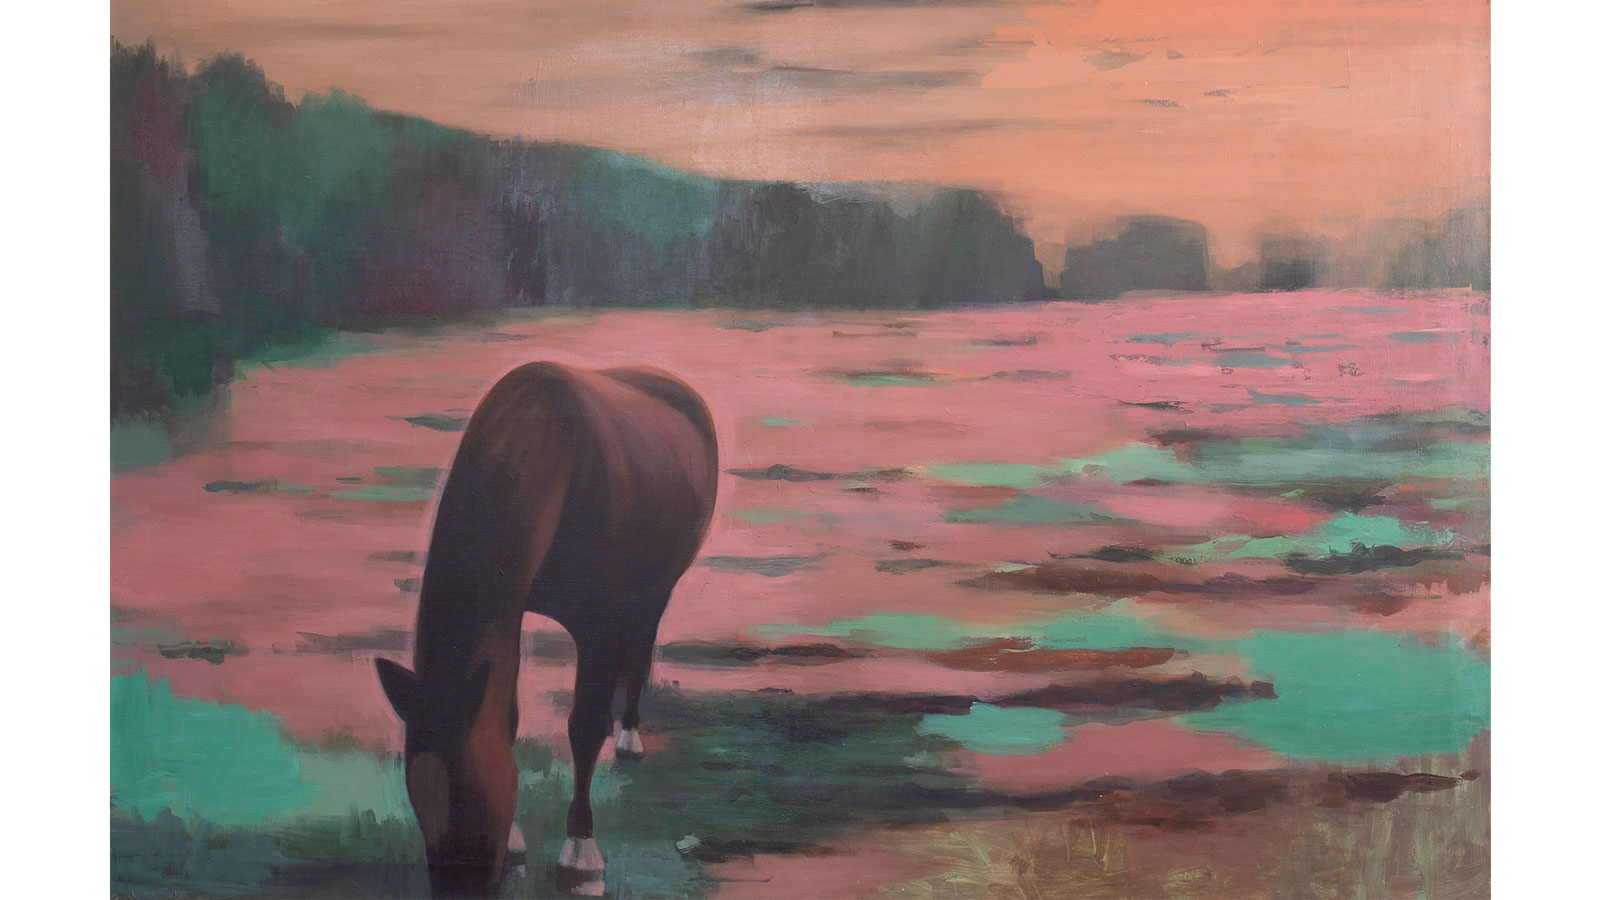 Målning. En häst står och betar i ett rödskimrande ljus. Mulen befinner sig utanför nedre delen av bilden. Marken är rosa och grön, i bakgrunden sträcker sig en grönaktig skog. 